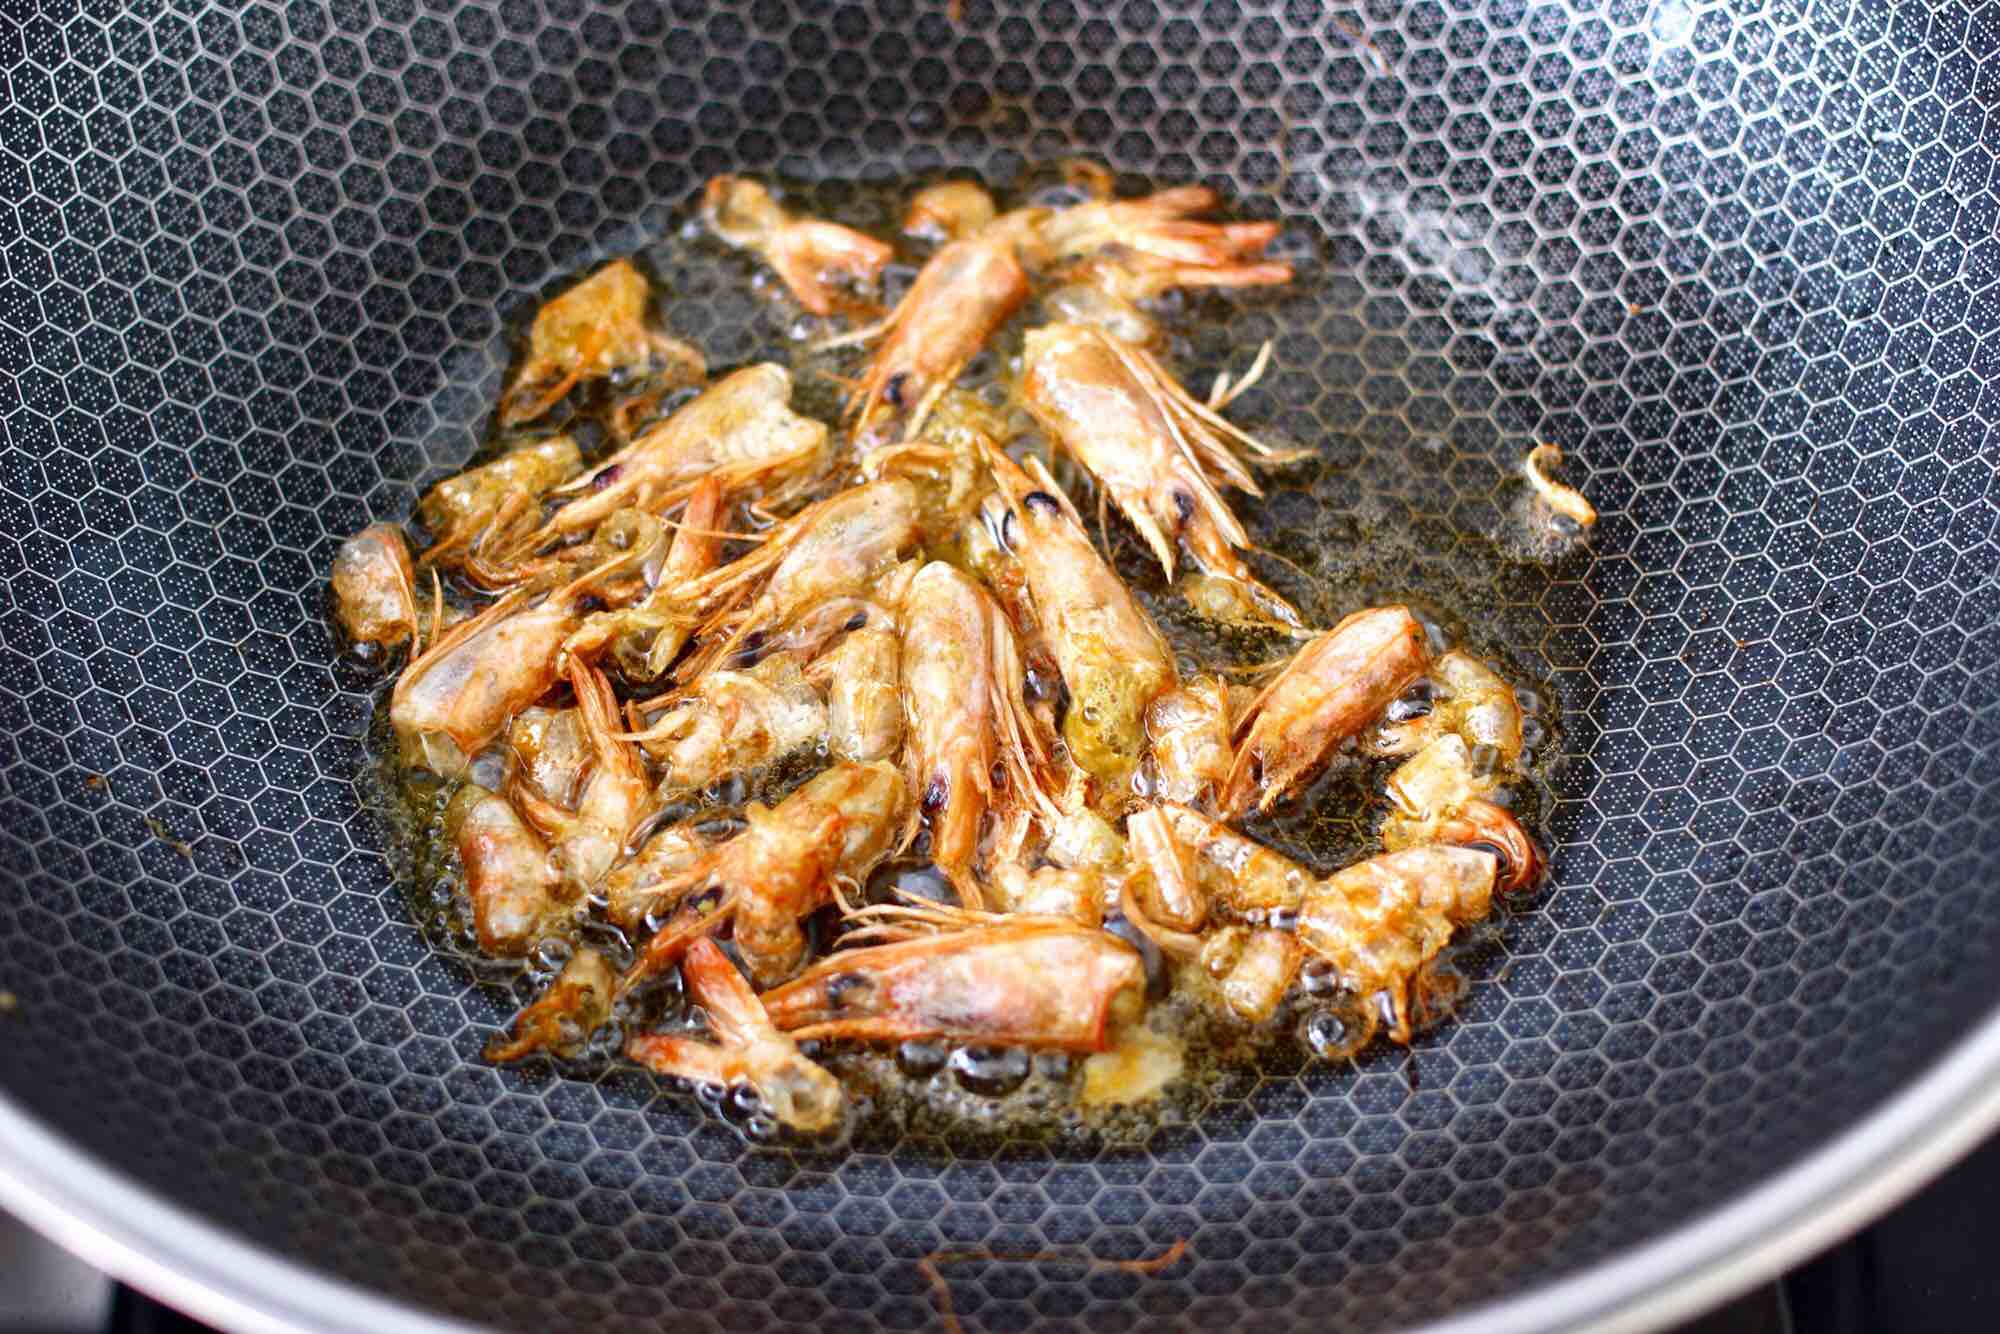 Shrimp and Sea Cucumber Casserole Congee recipe